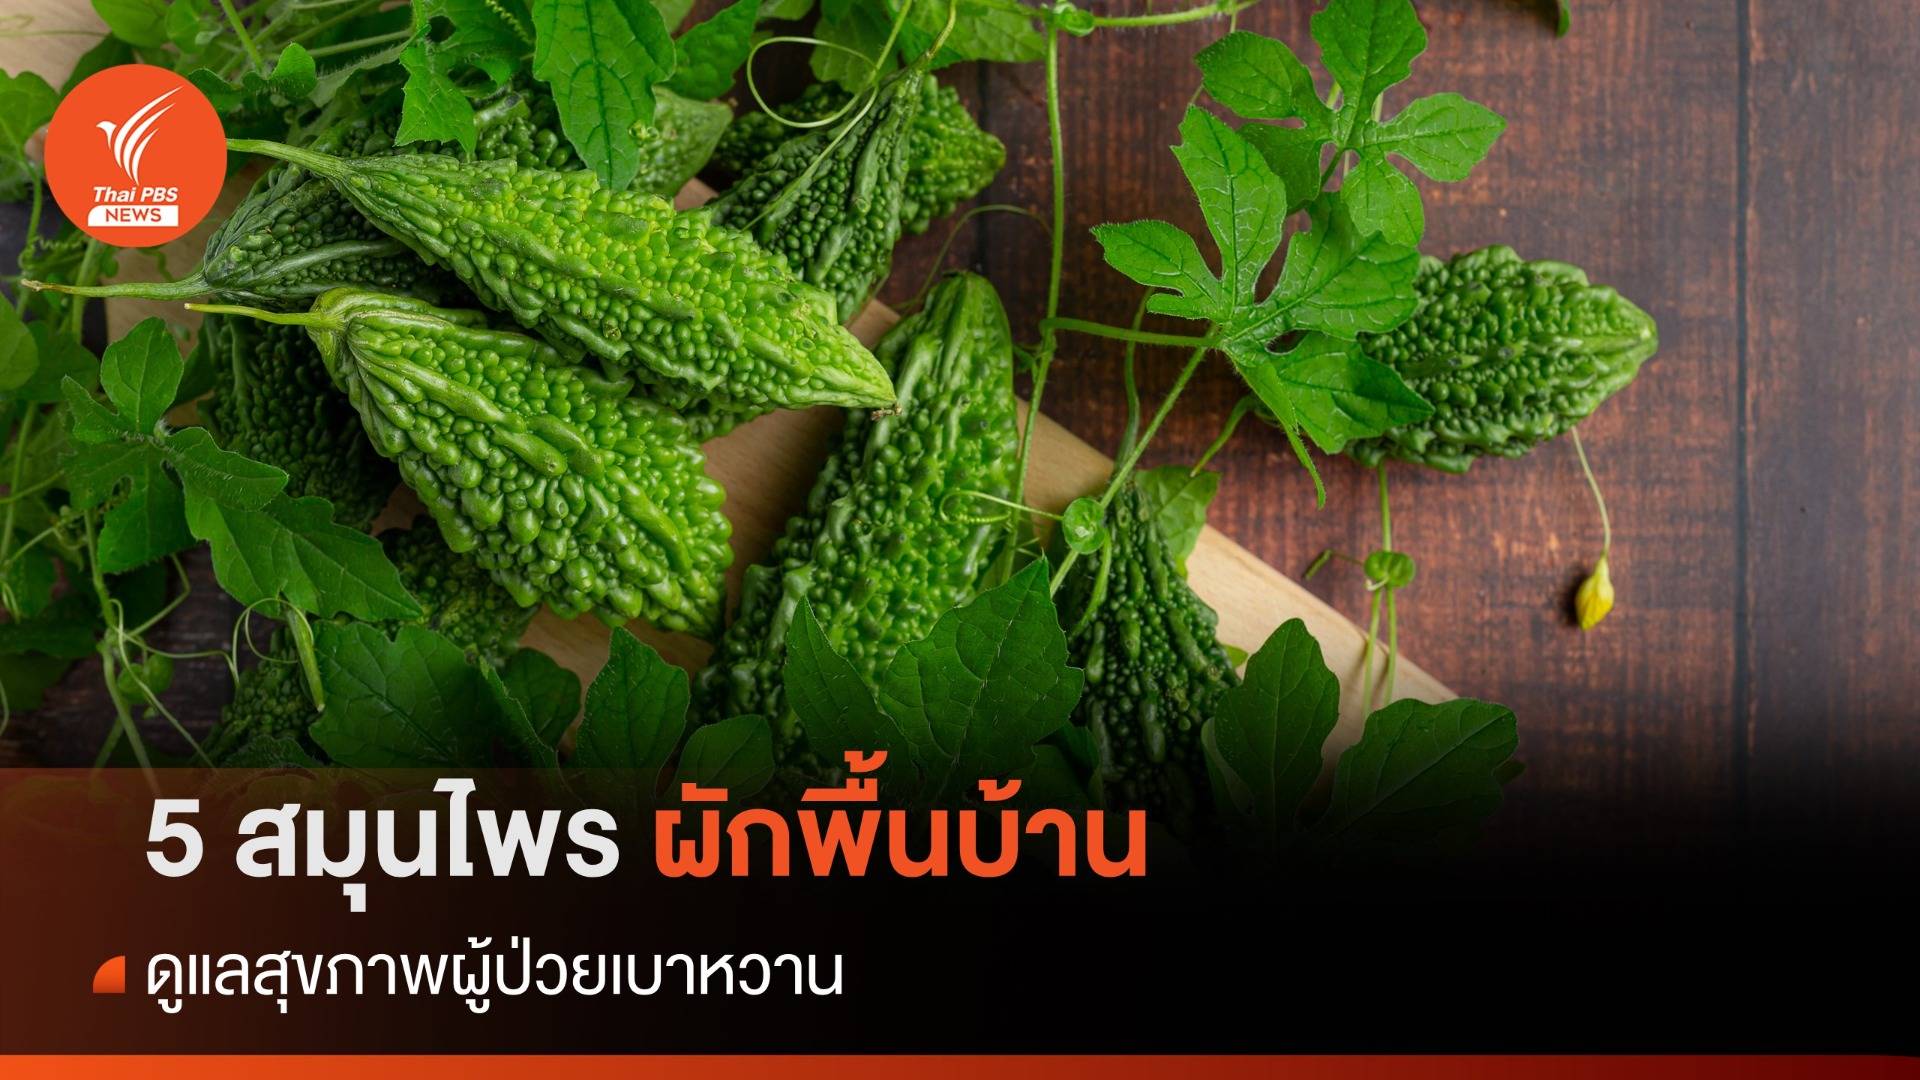 5 สมุนไพรผักพื้นบ้าน 1 ตำรับยาไทย พิชิตเบาหวาน